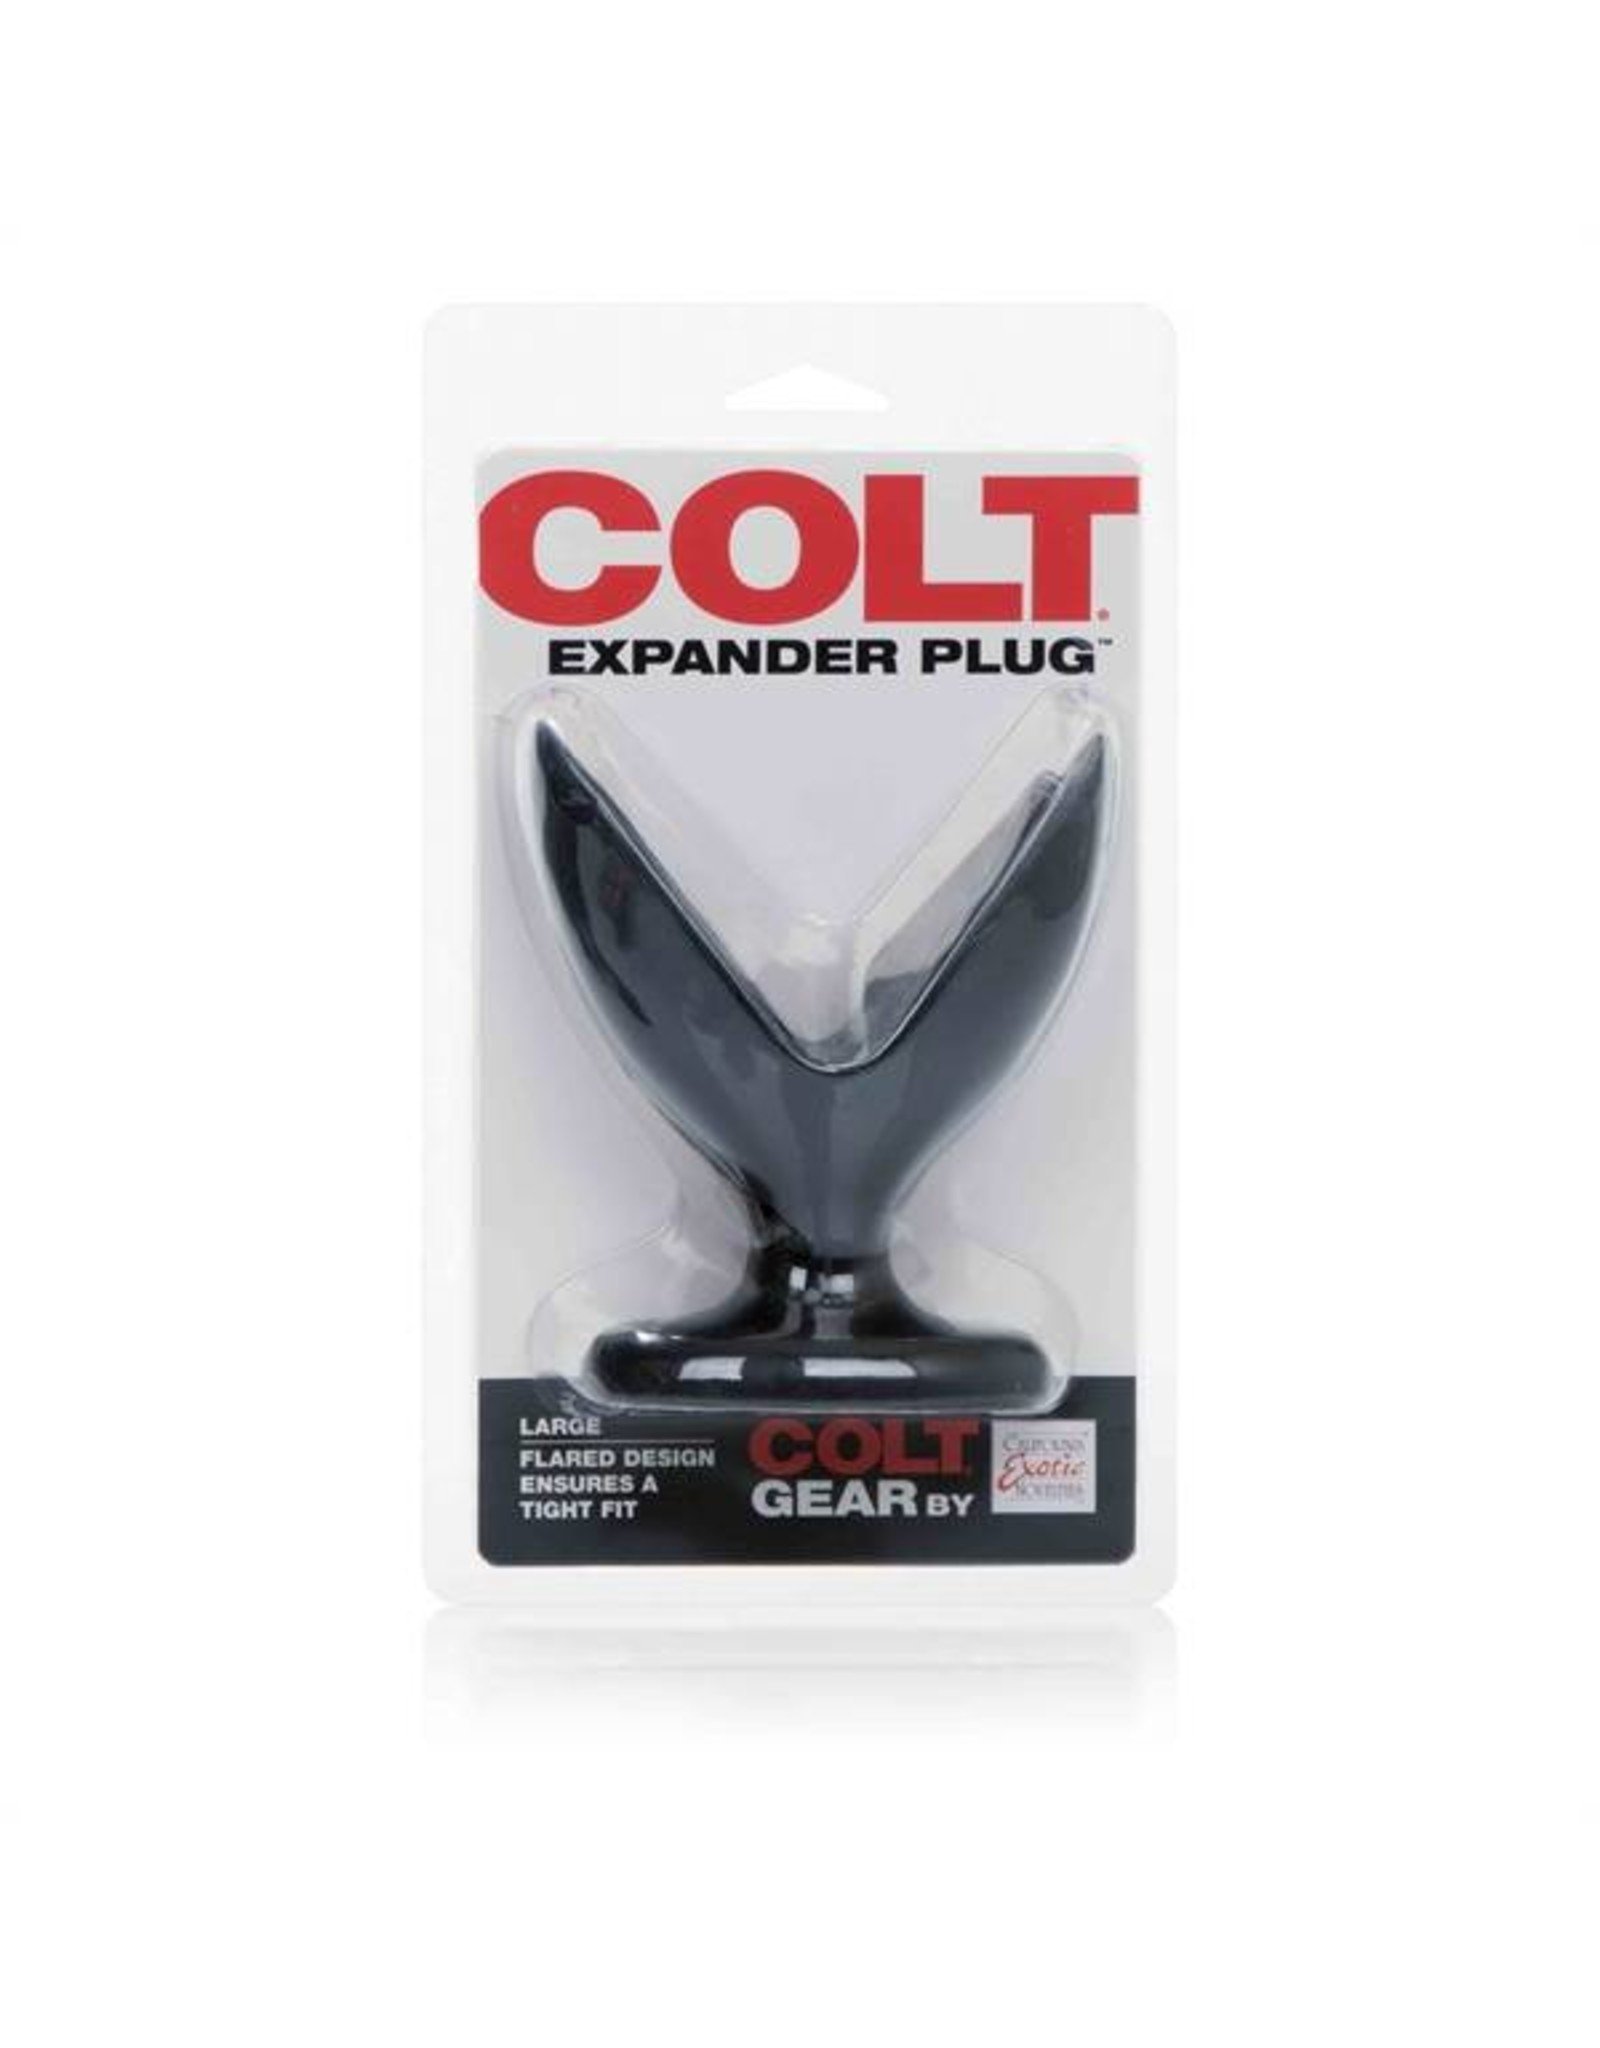 Colt COLT Expander Plug Large